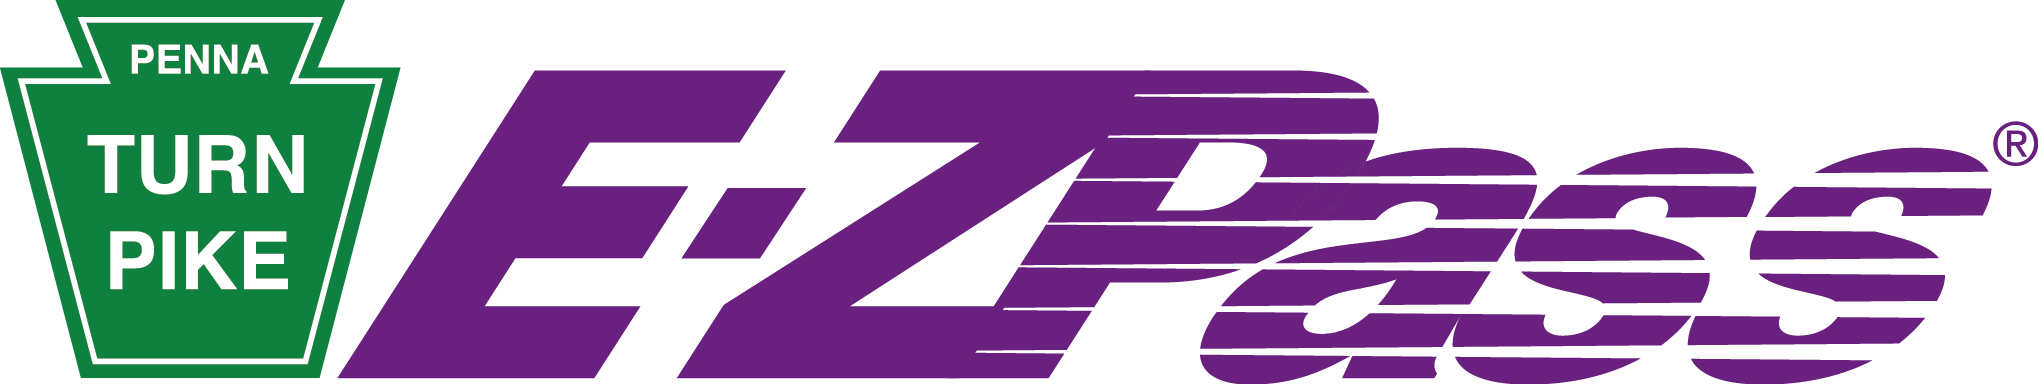 logo-ezpass-turnpike-purple.png